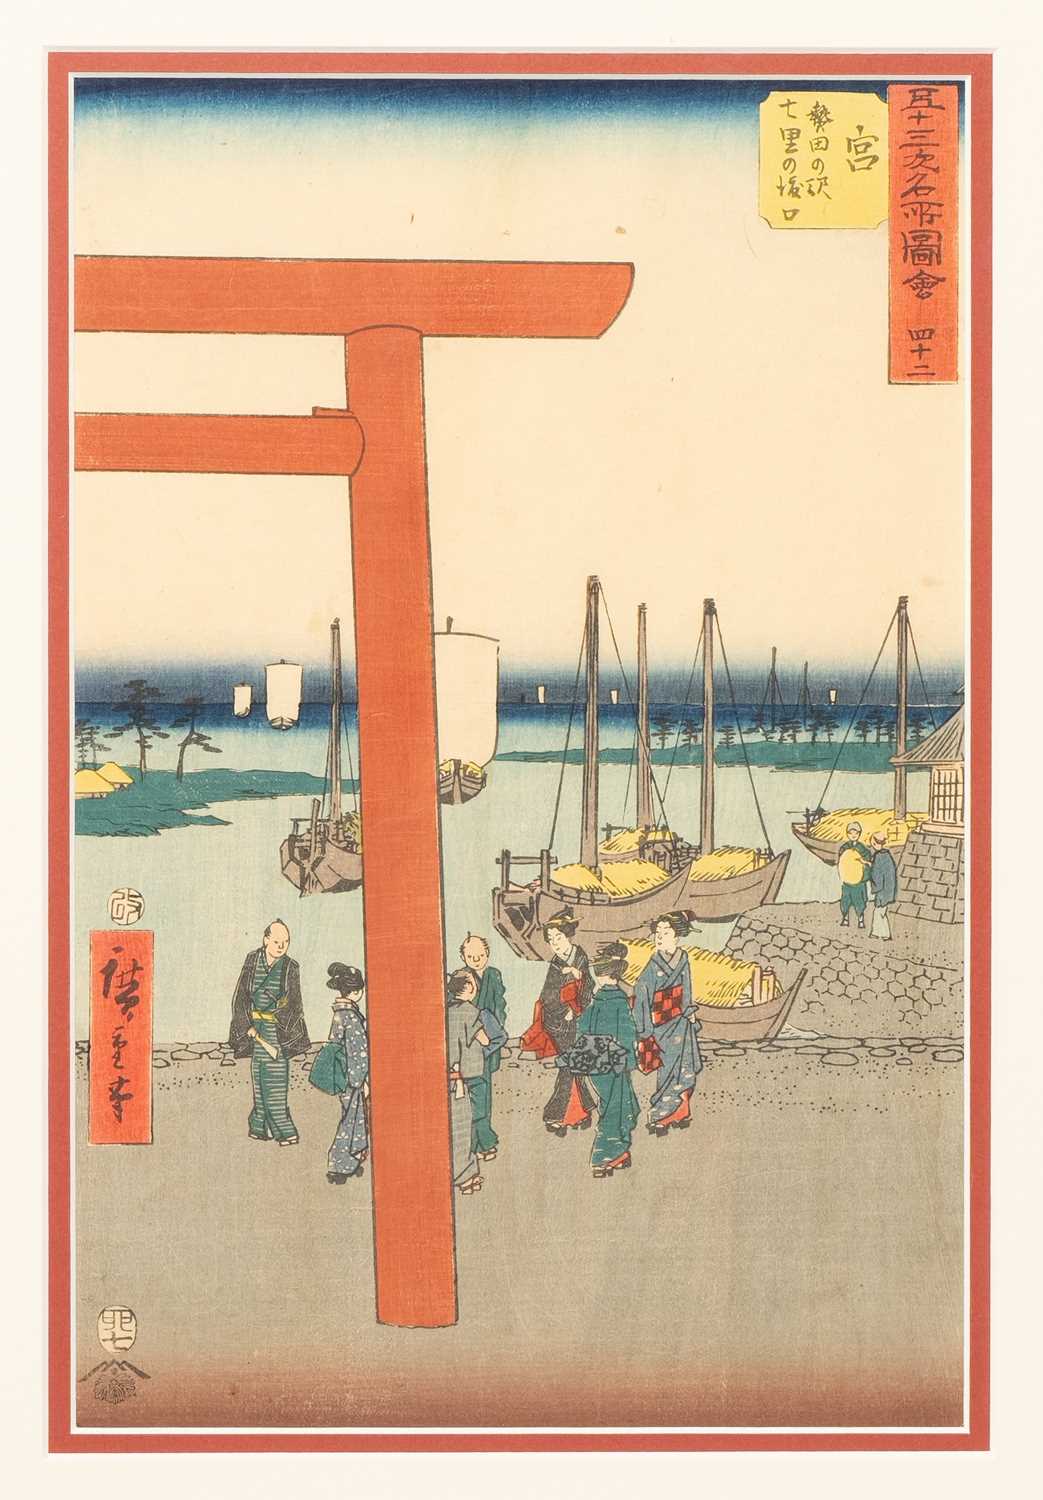 UTAGAWA HIROSHIGE (1797-1858) MIYA: ATSUTA NO EKI SHICHIRI NO WATASHIGUCHI (MIYA: ATSUTA TERMINAL OF